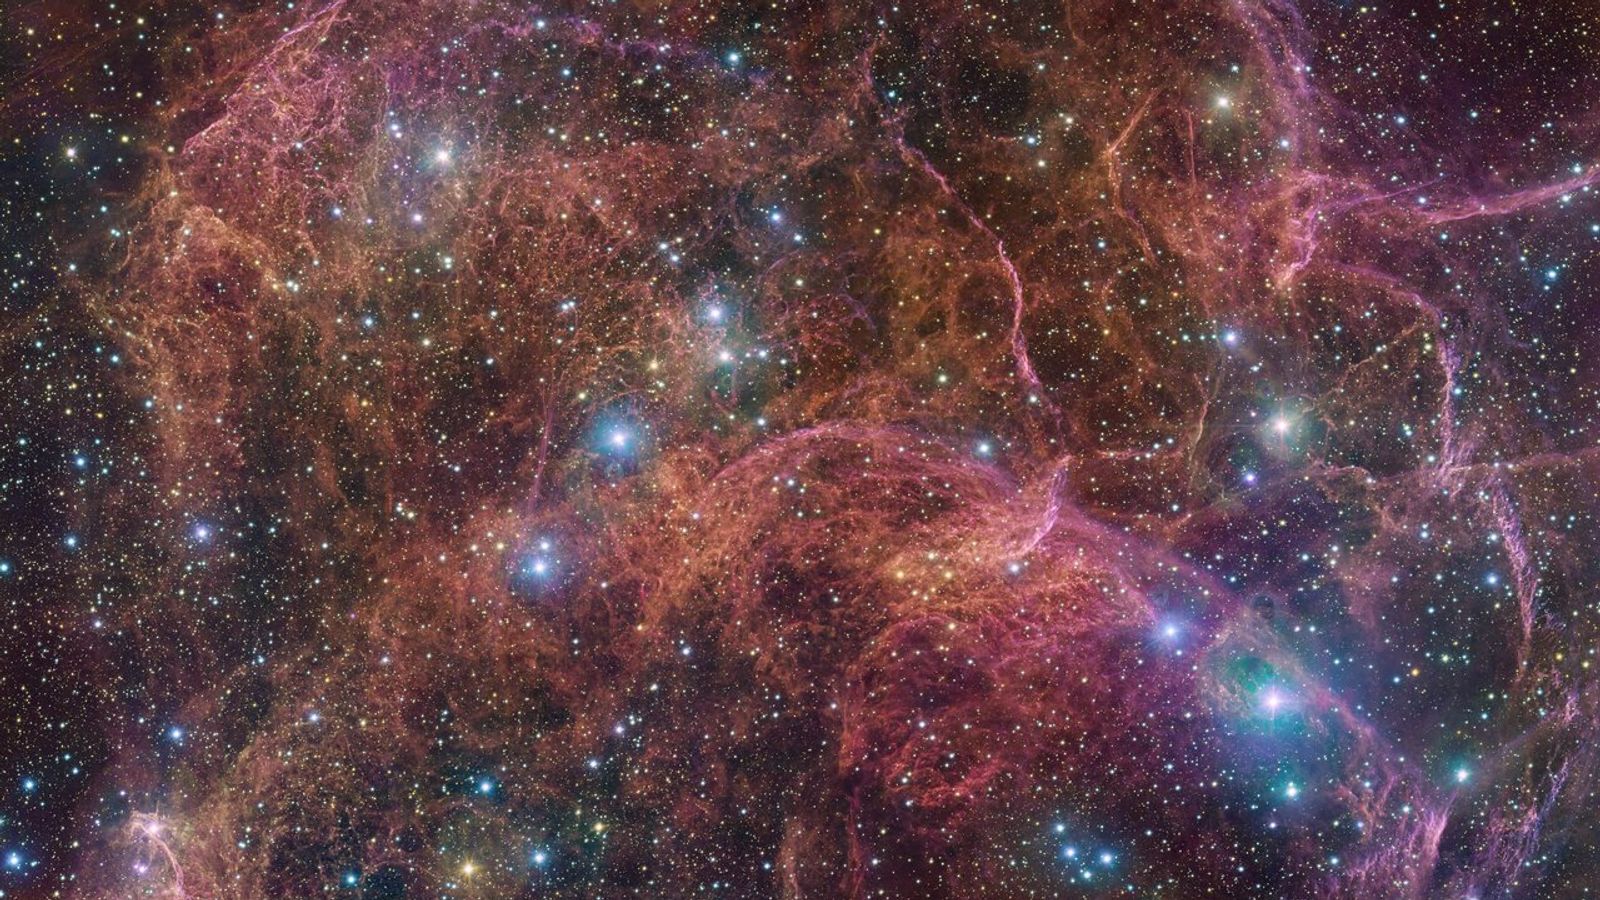 Nueva imagen revela impresionantes restos fantasmales de una estrella gigante |  Noticias científicas y técnicas.